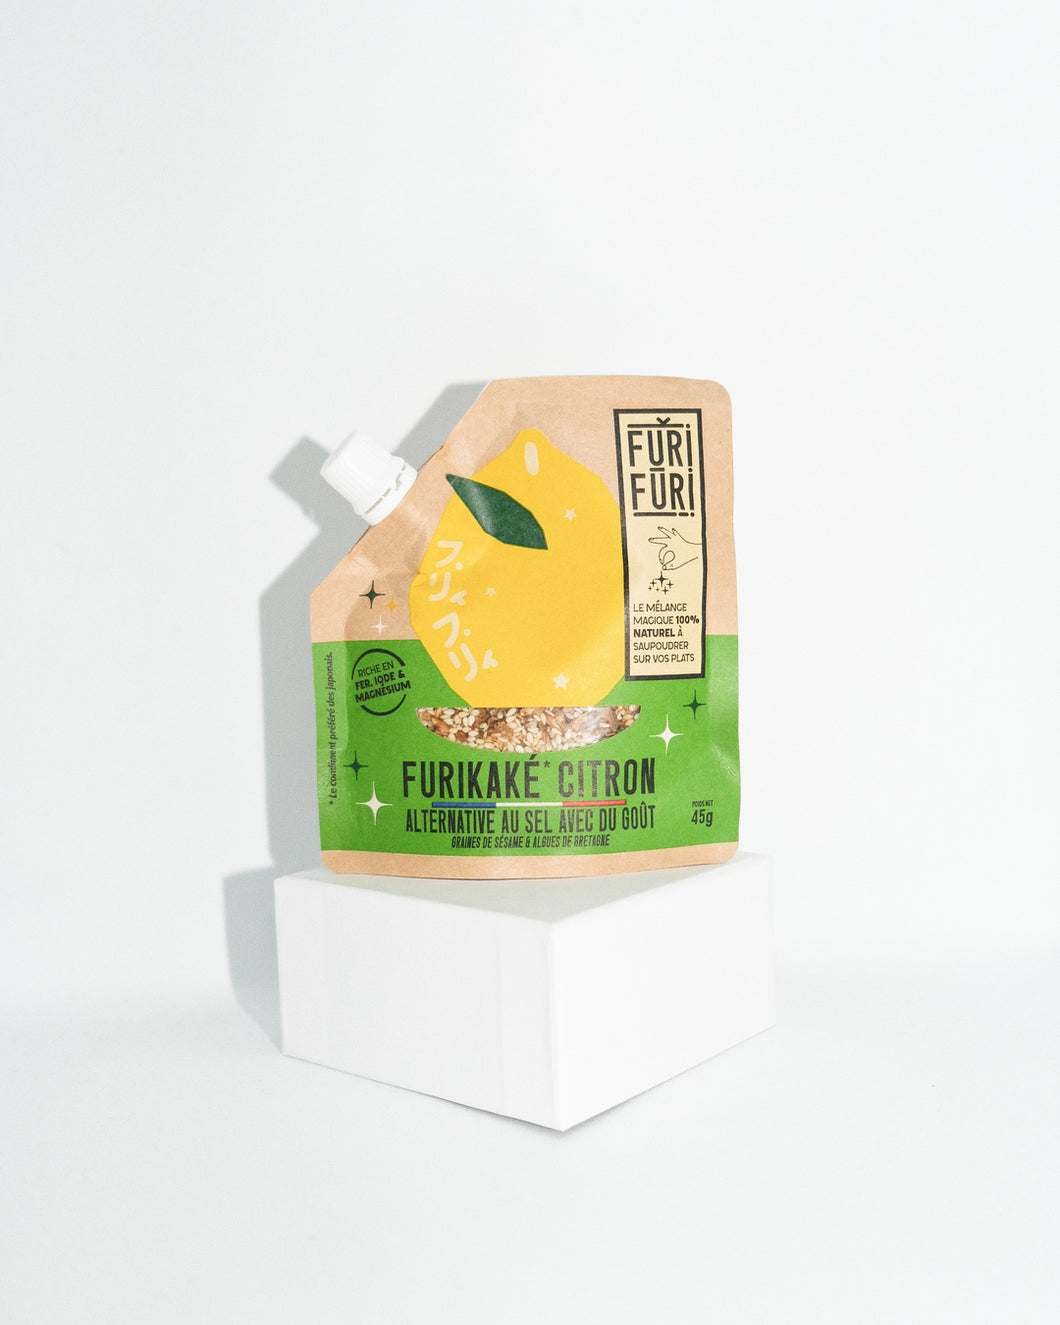 Furikake Citron